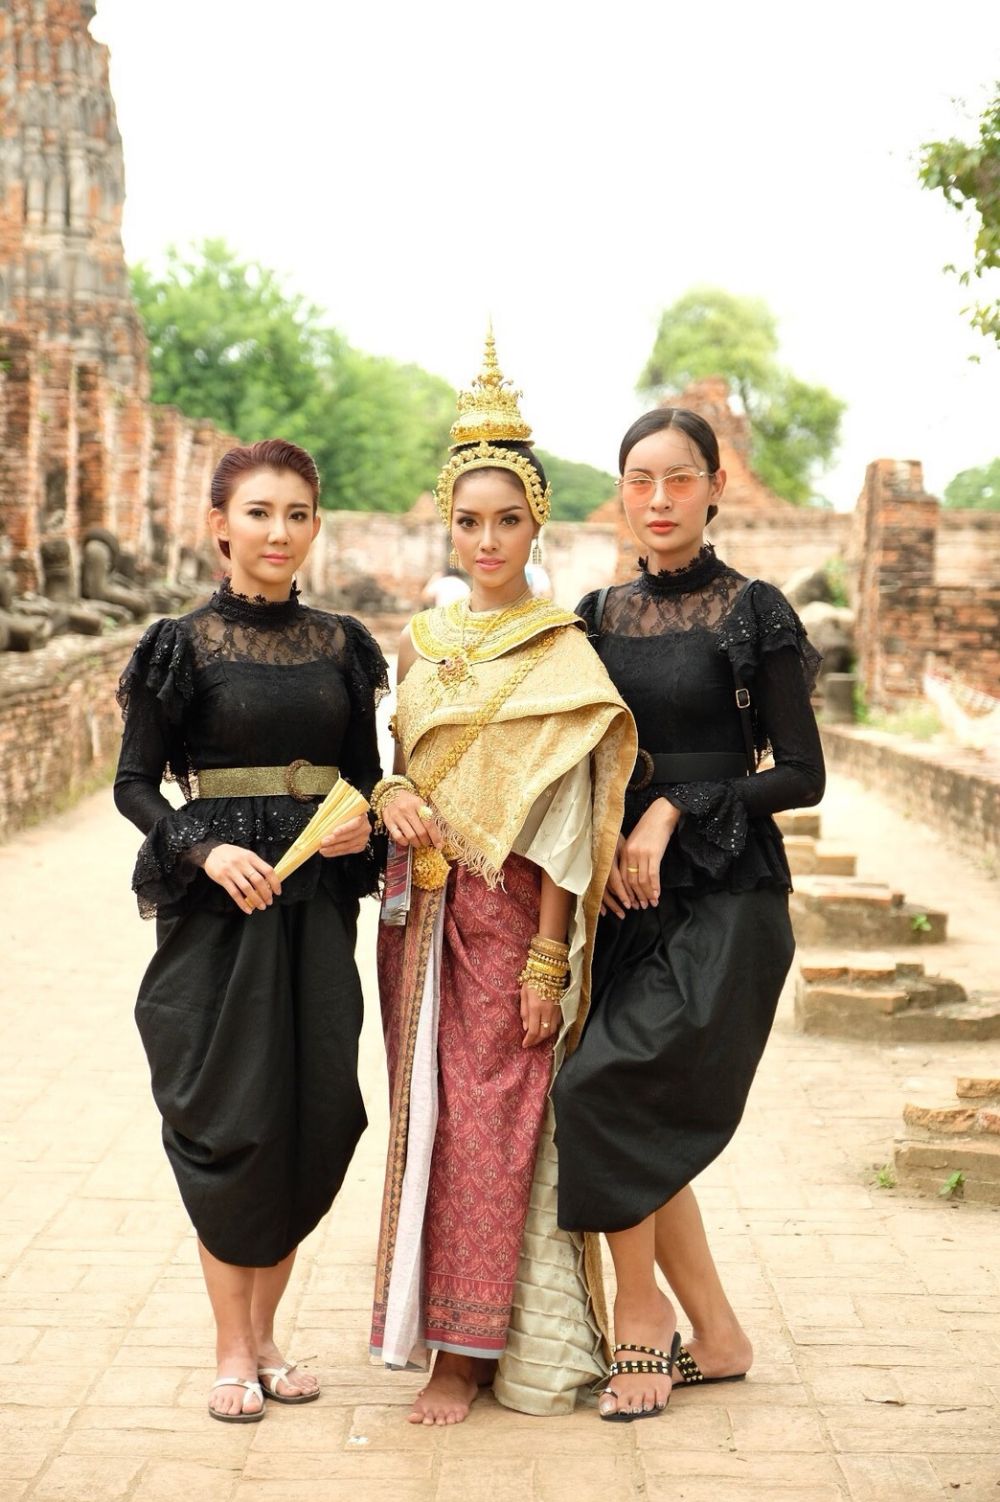 ขนลุกซู่! จ๋าวีรณุช Miss Heritage Universe Thailand 2018,นึกว่าคุณอุบล